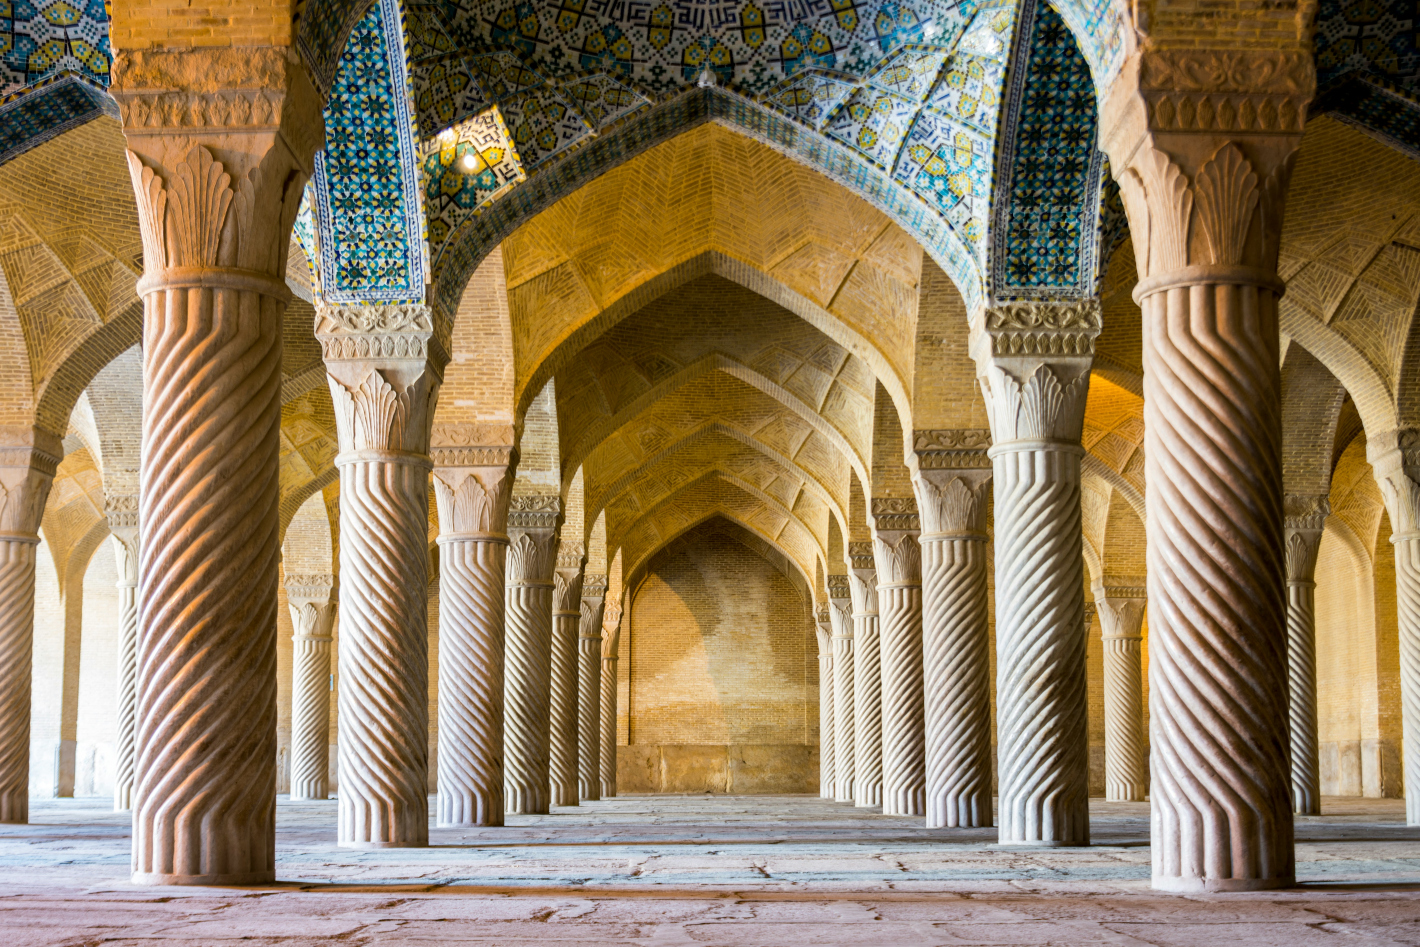 Arabské sloupy a barevná mozaika na stěnách uvnitř chrámu.